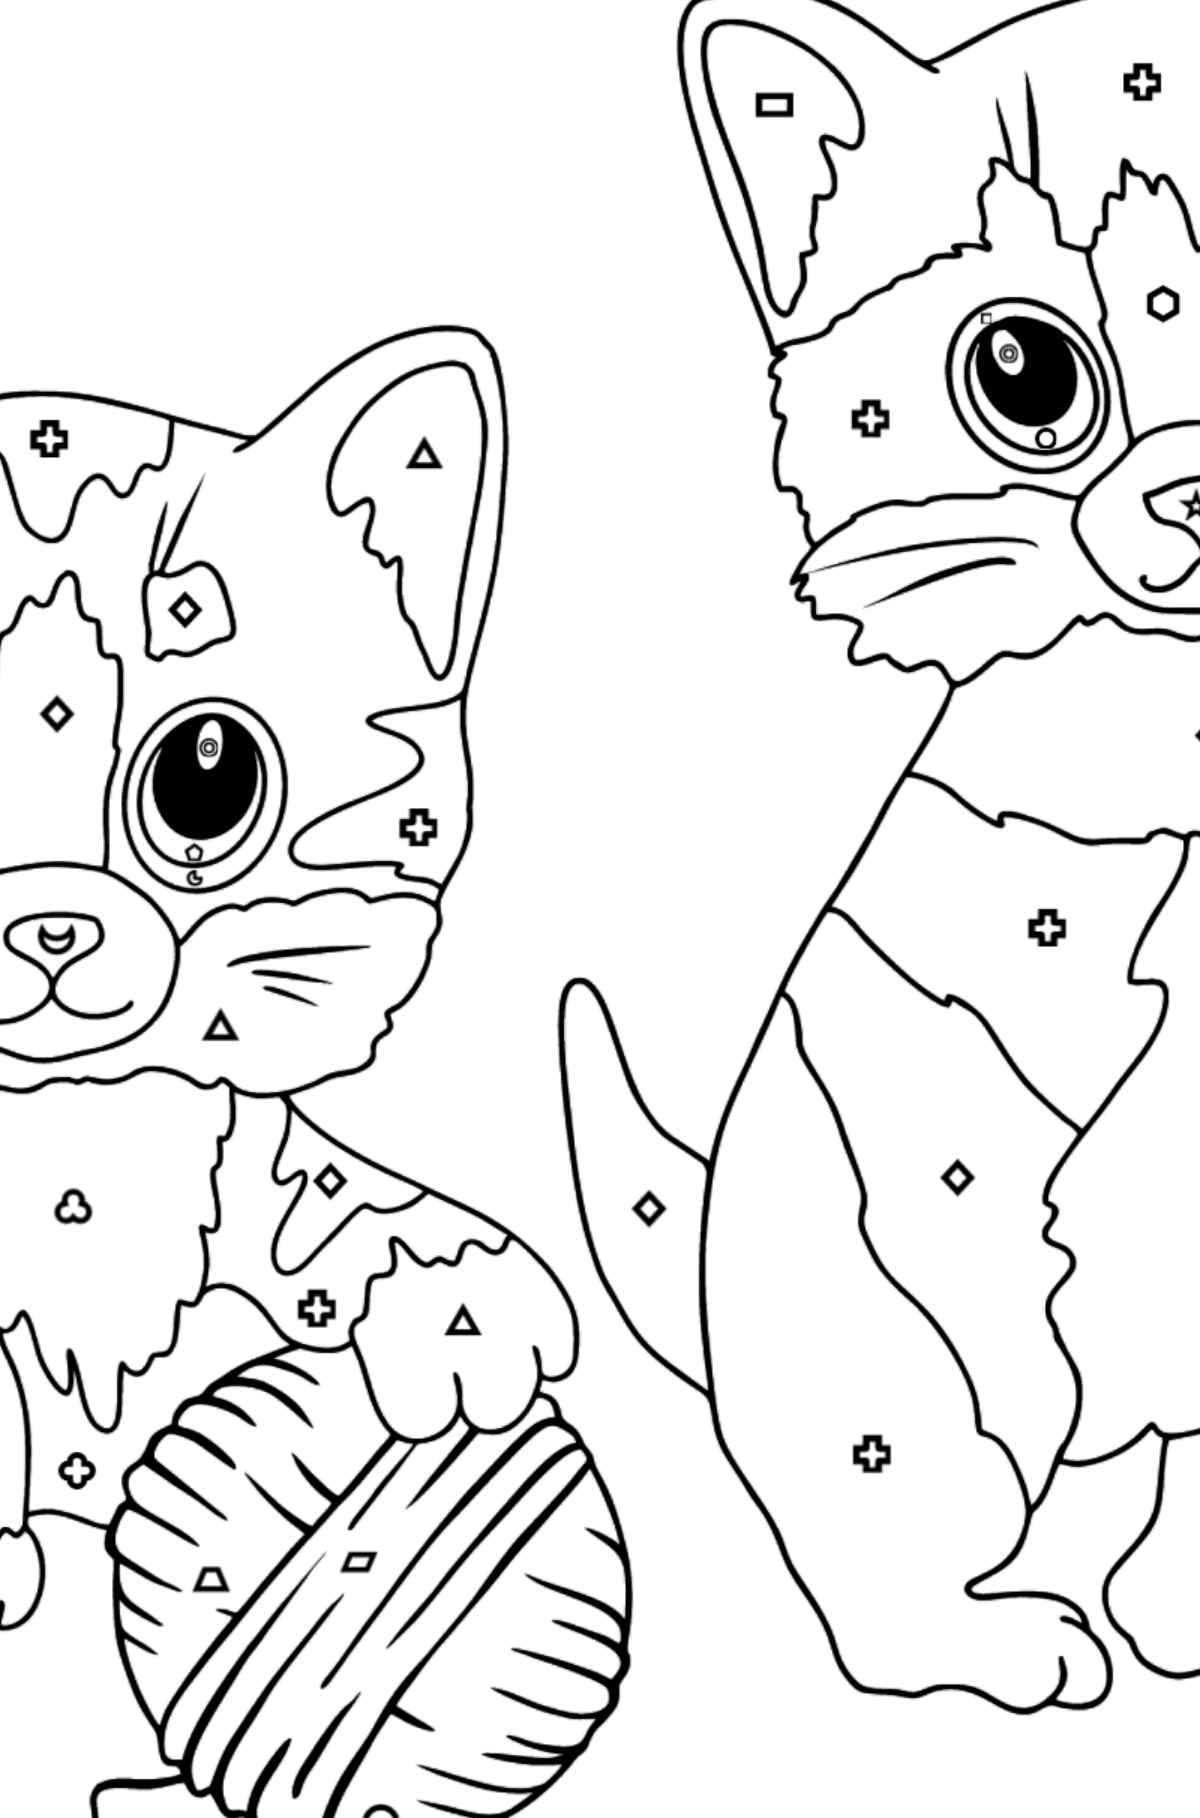 Розмальовка кошенята та клубок ниток - Розмальовки за геометричними фігурами для дітей